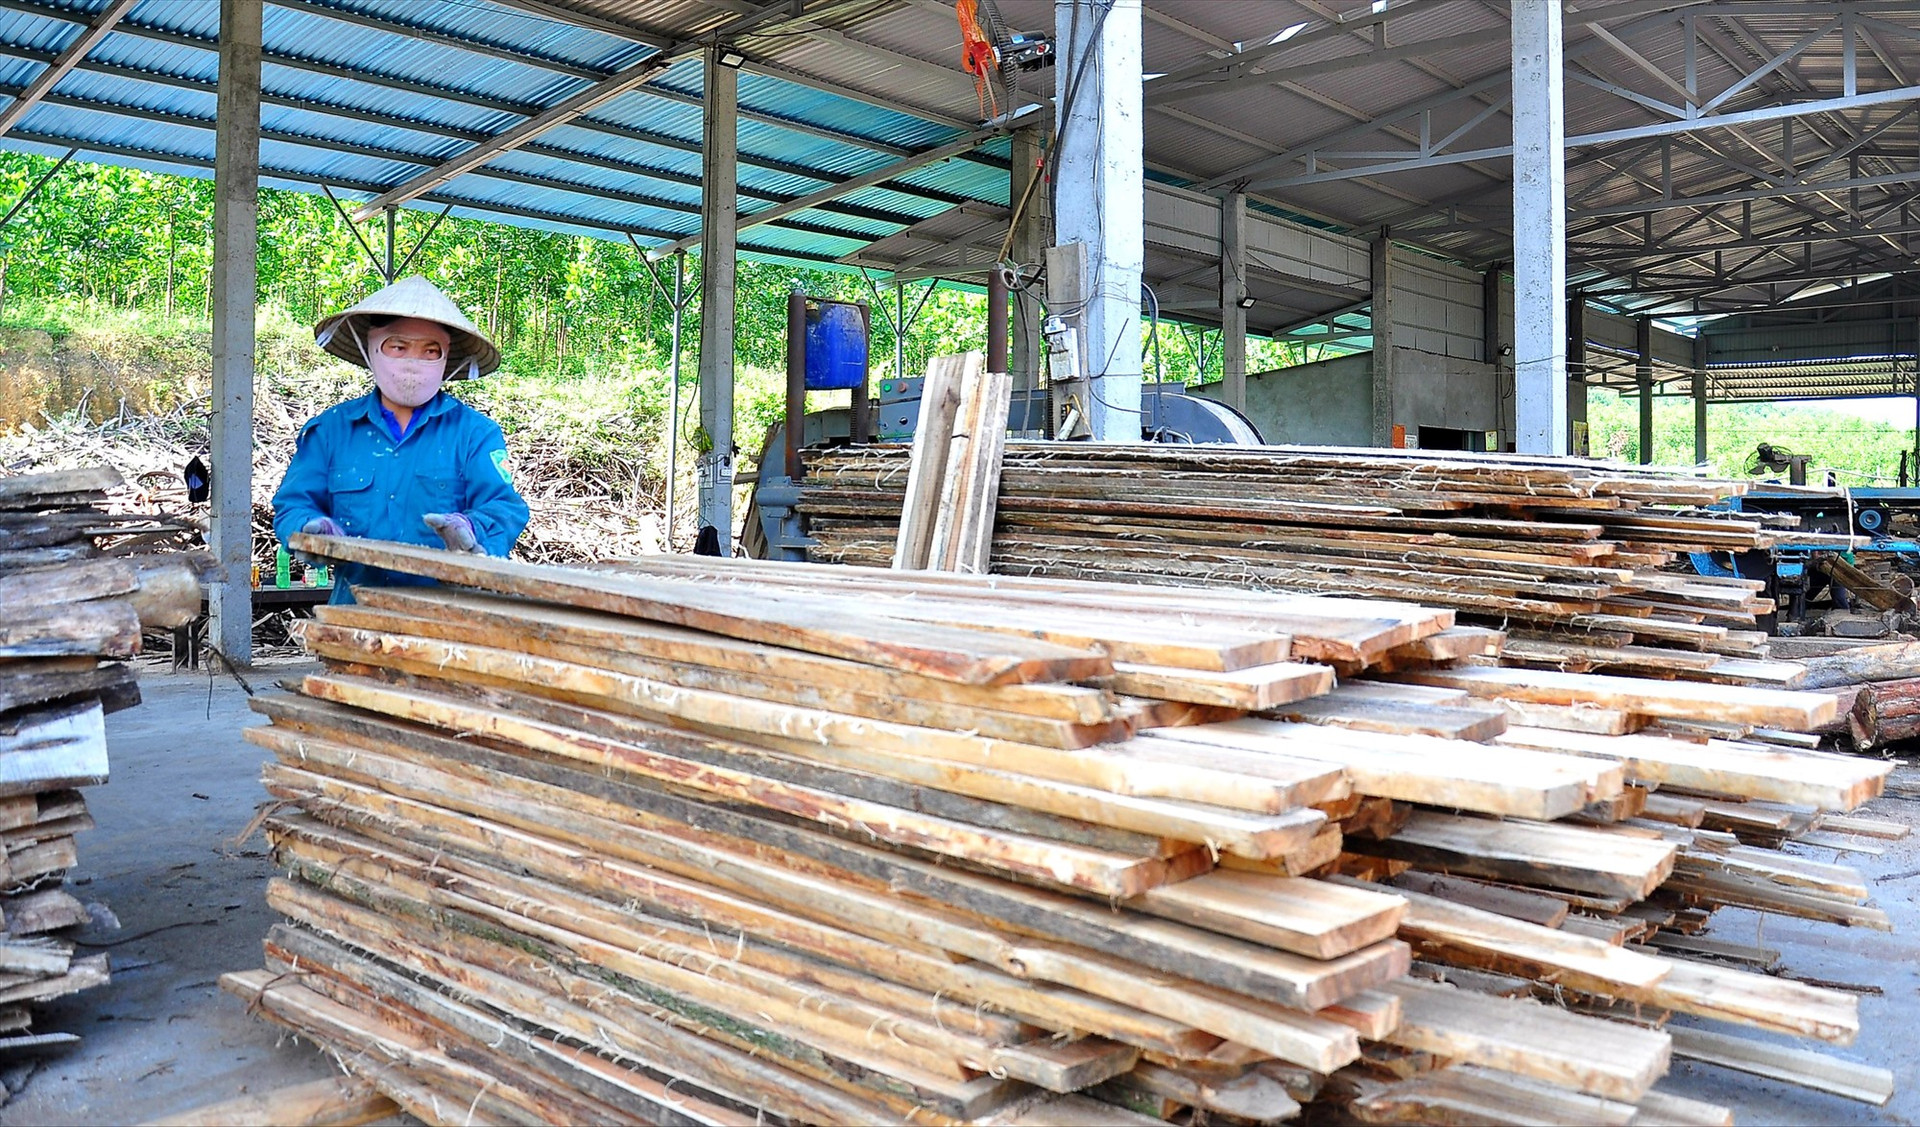 Thời gian tới, Hiệp Đức ưu tiên hỗ trợ các doanh nghiệp vào liên kết với người dân địa phương trồng và chế biến gỗ nguyên liệu. Ảnh: VĂN SỰ